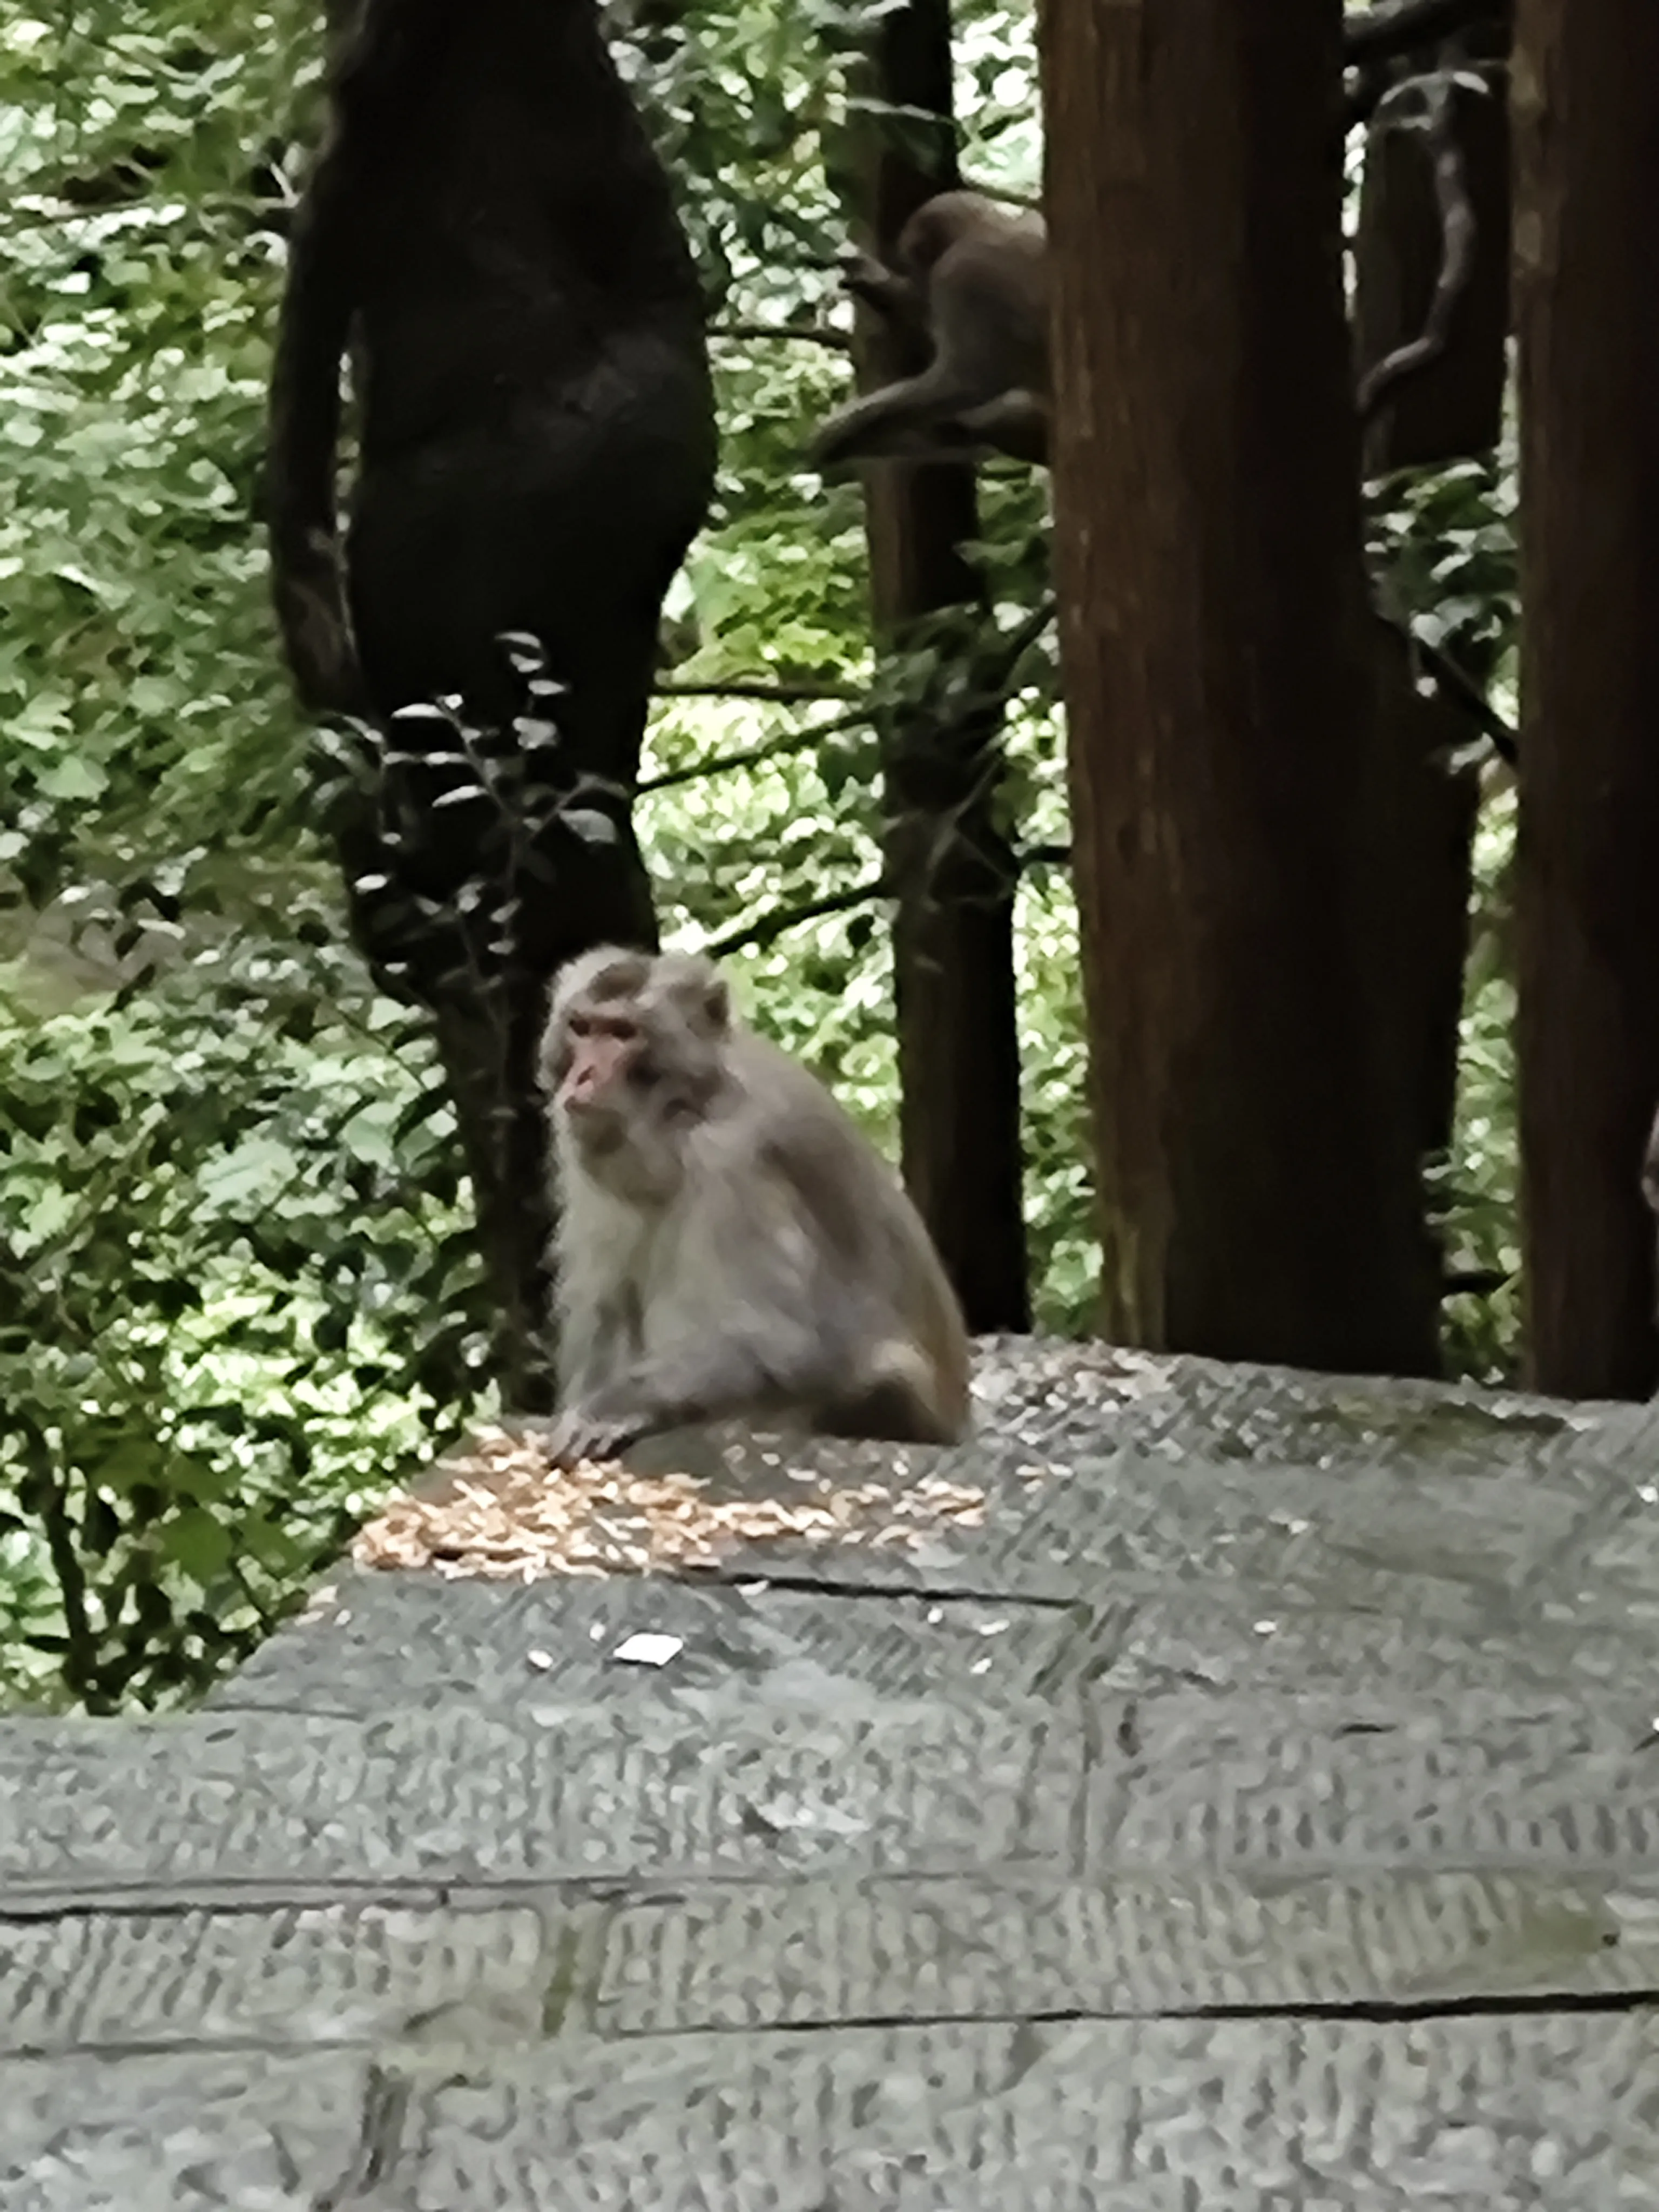 山上的猴子还是猛一些，我同学在包边边放杯子的地方藏了条士力架，被猴子看见了，直接爬身上抢